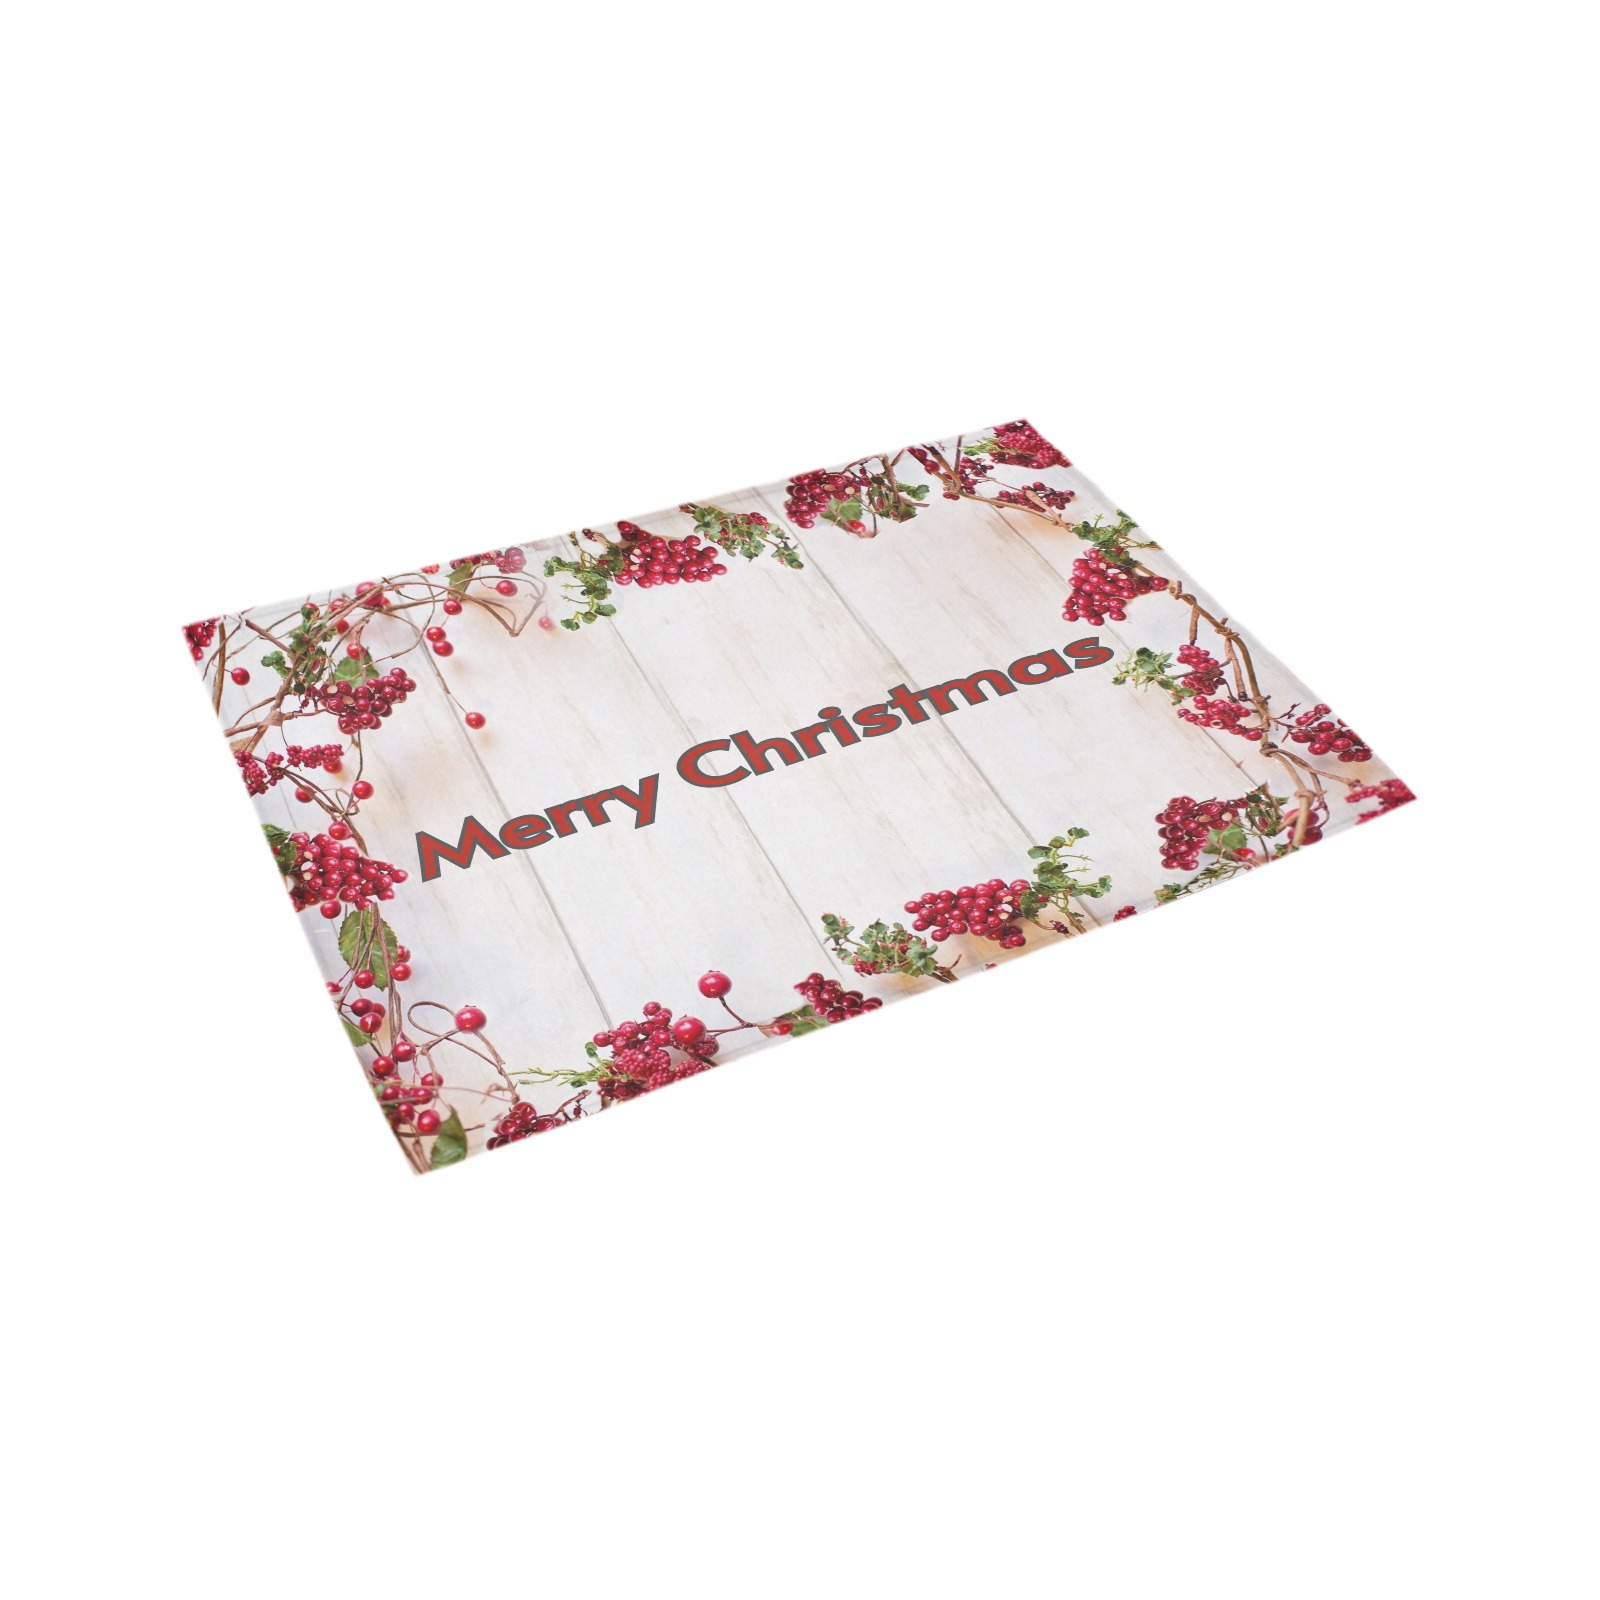 Welcome Christmas Azalea Doormat 24" x 16" (Sponge Material)